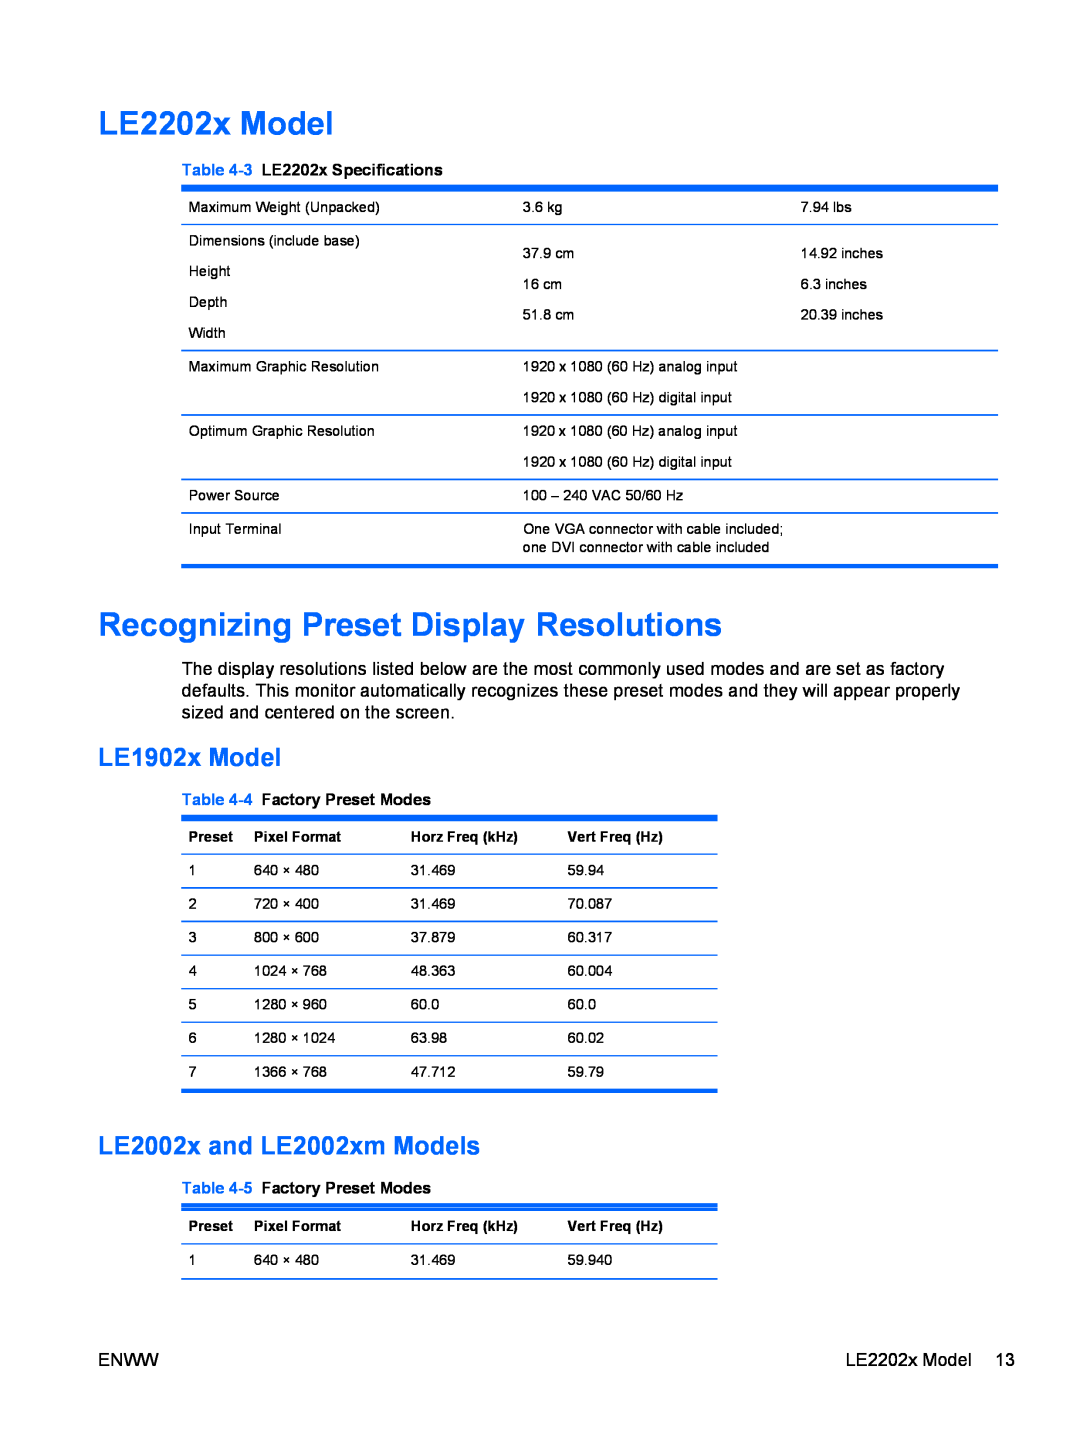 HP LE2002XM, LE1902X LE2202x Model, Recognizing Preset Display Resolutions, LE1902x Model, LE2002x and LE2002xm Models 